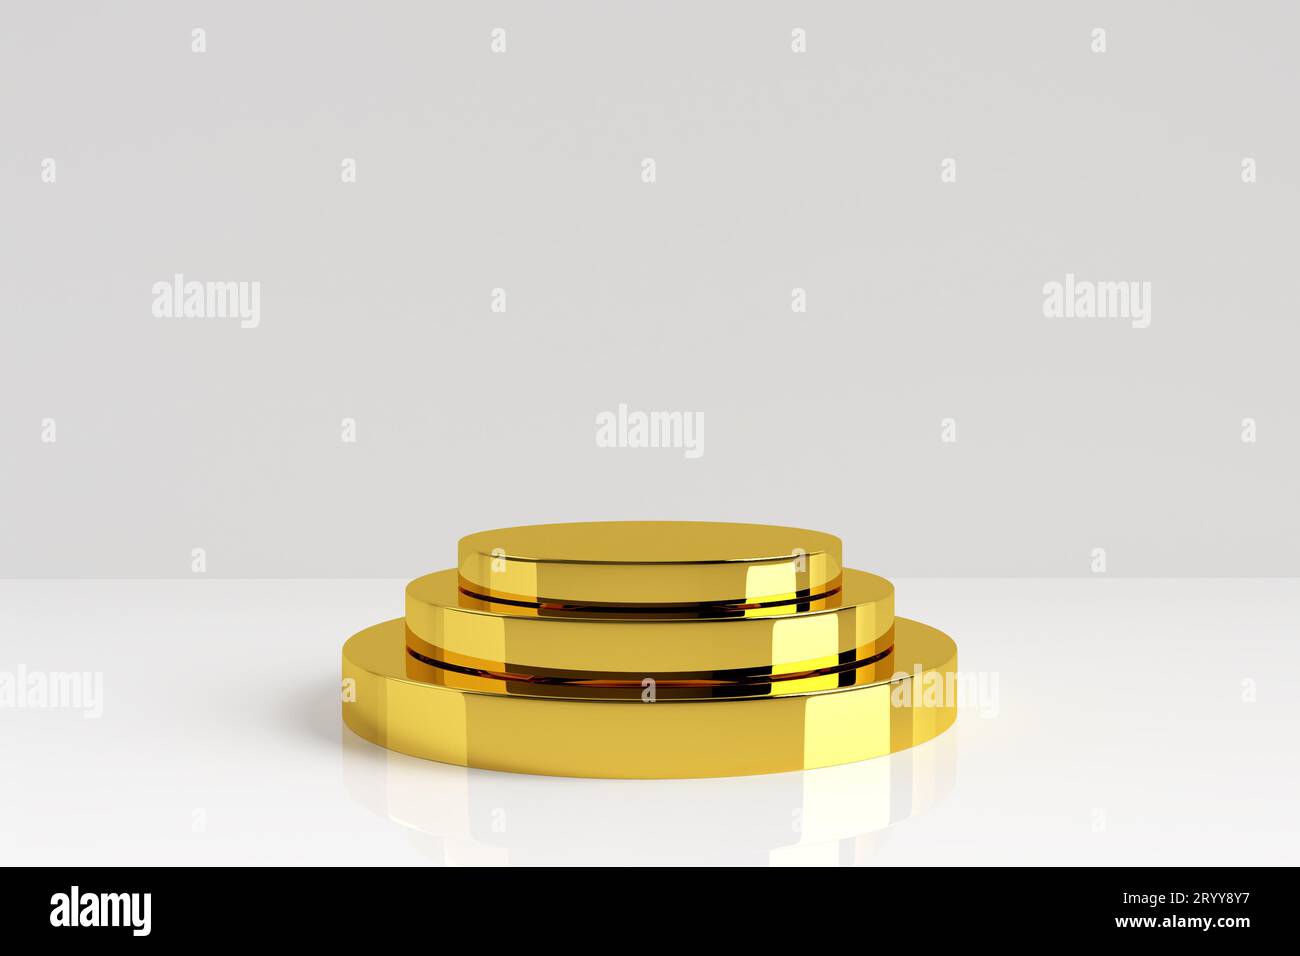 Drei Schichten Golden Product stehen auf weißem Hintergrund. Goldener Sockel mit Reflexion und Schatten auf dem Boden. Kundenpräsentation Stockfoto